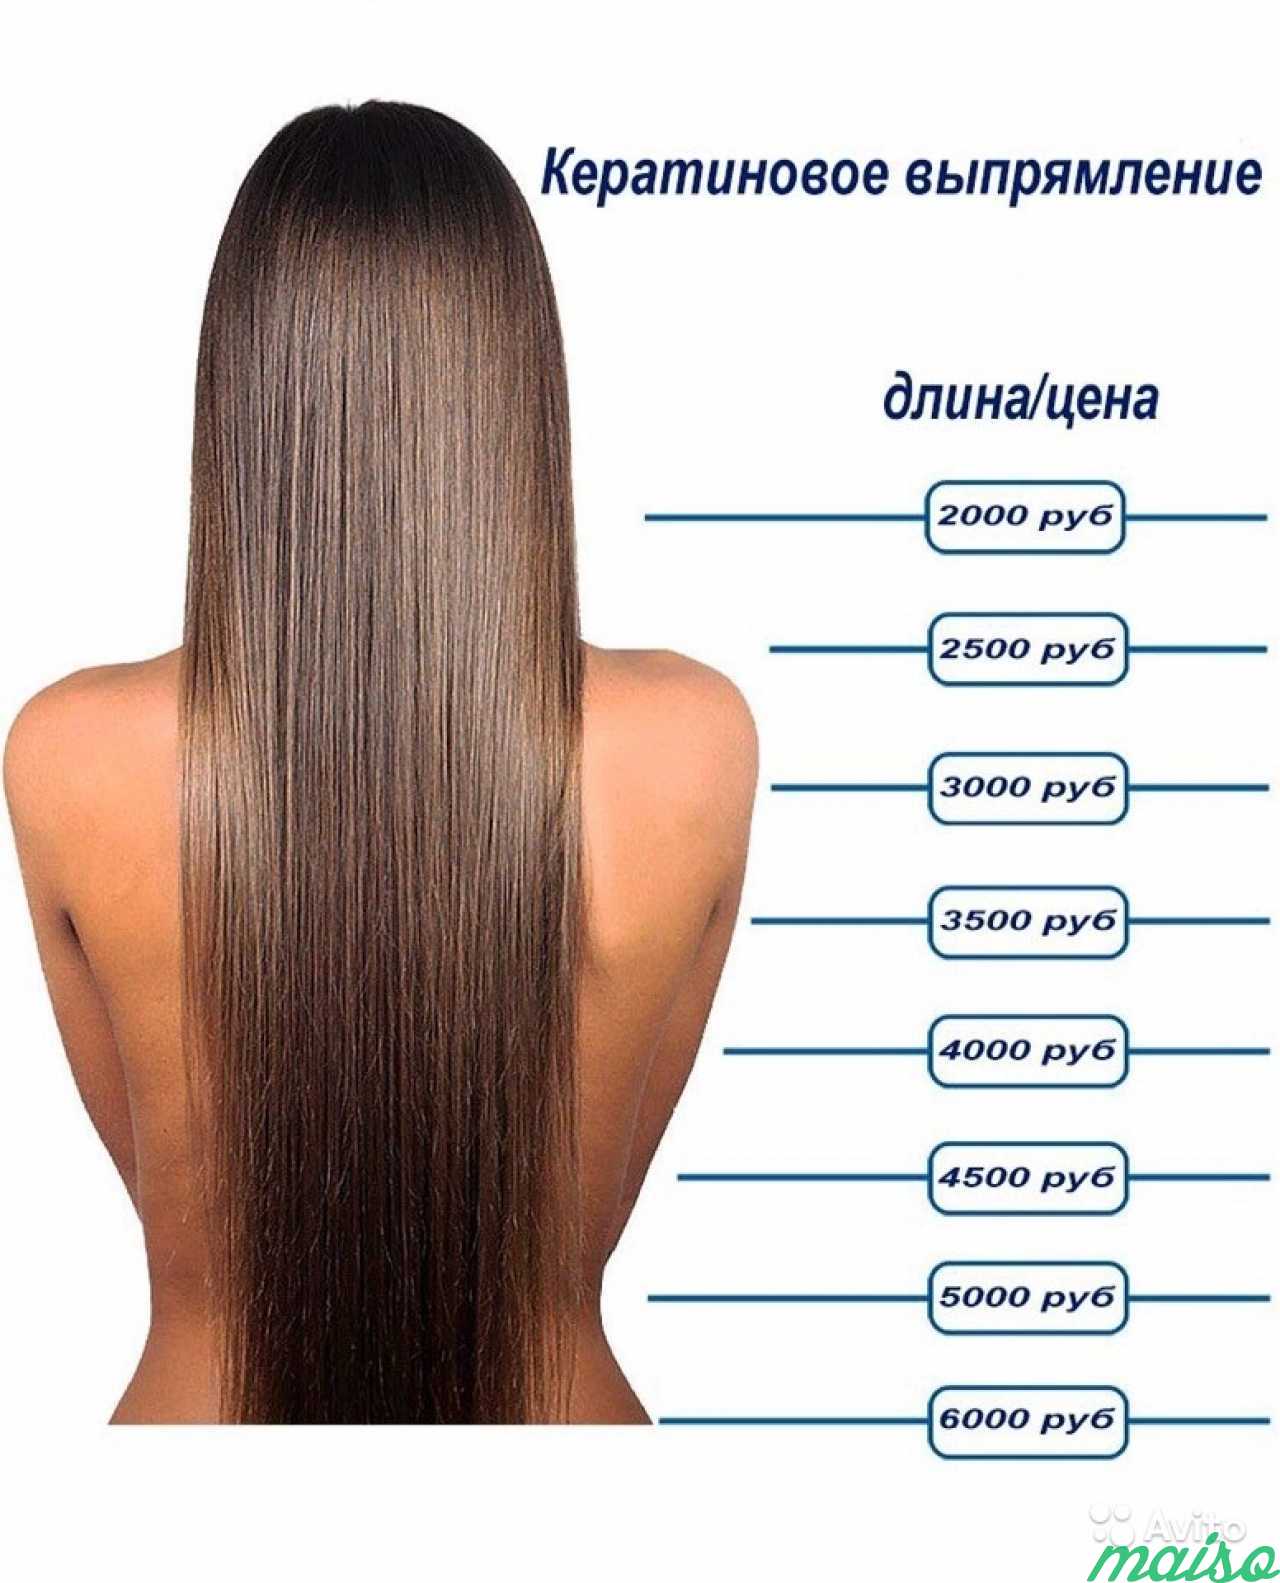 Норма для длинных волос